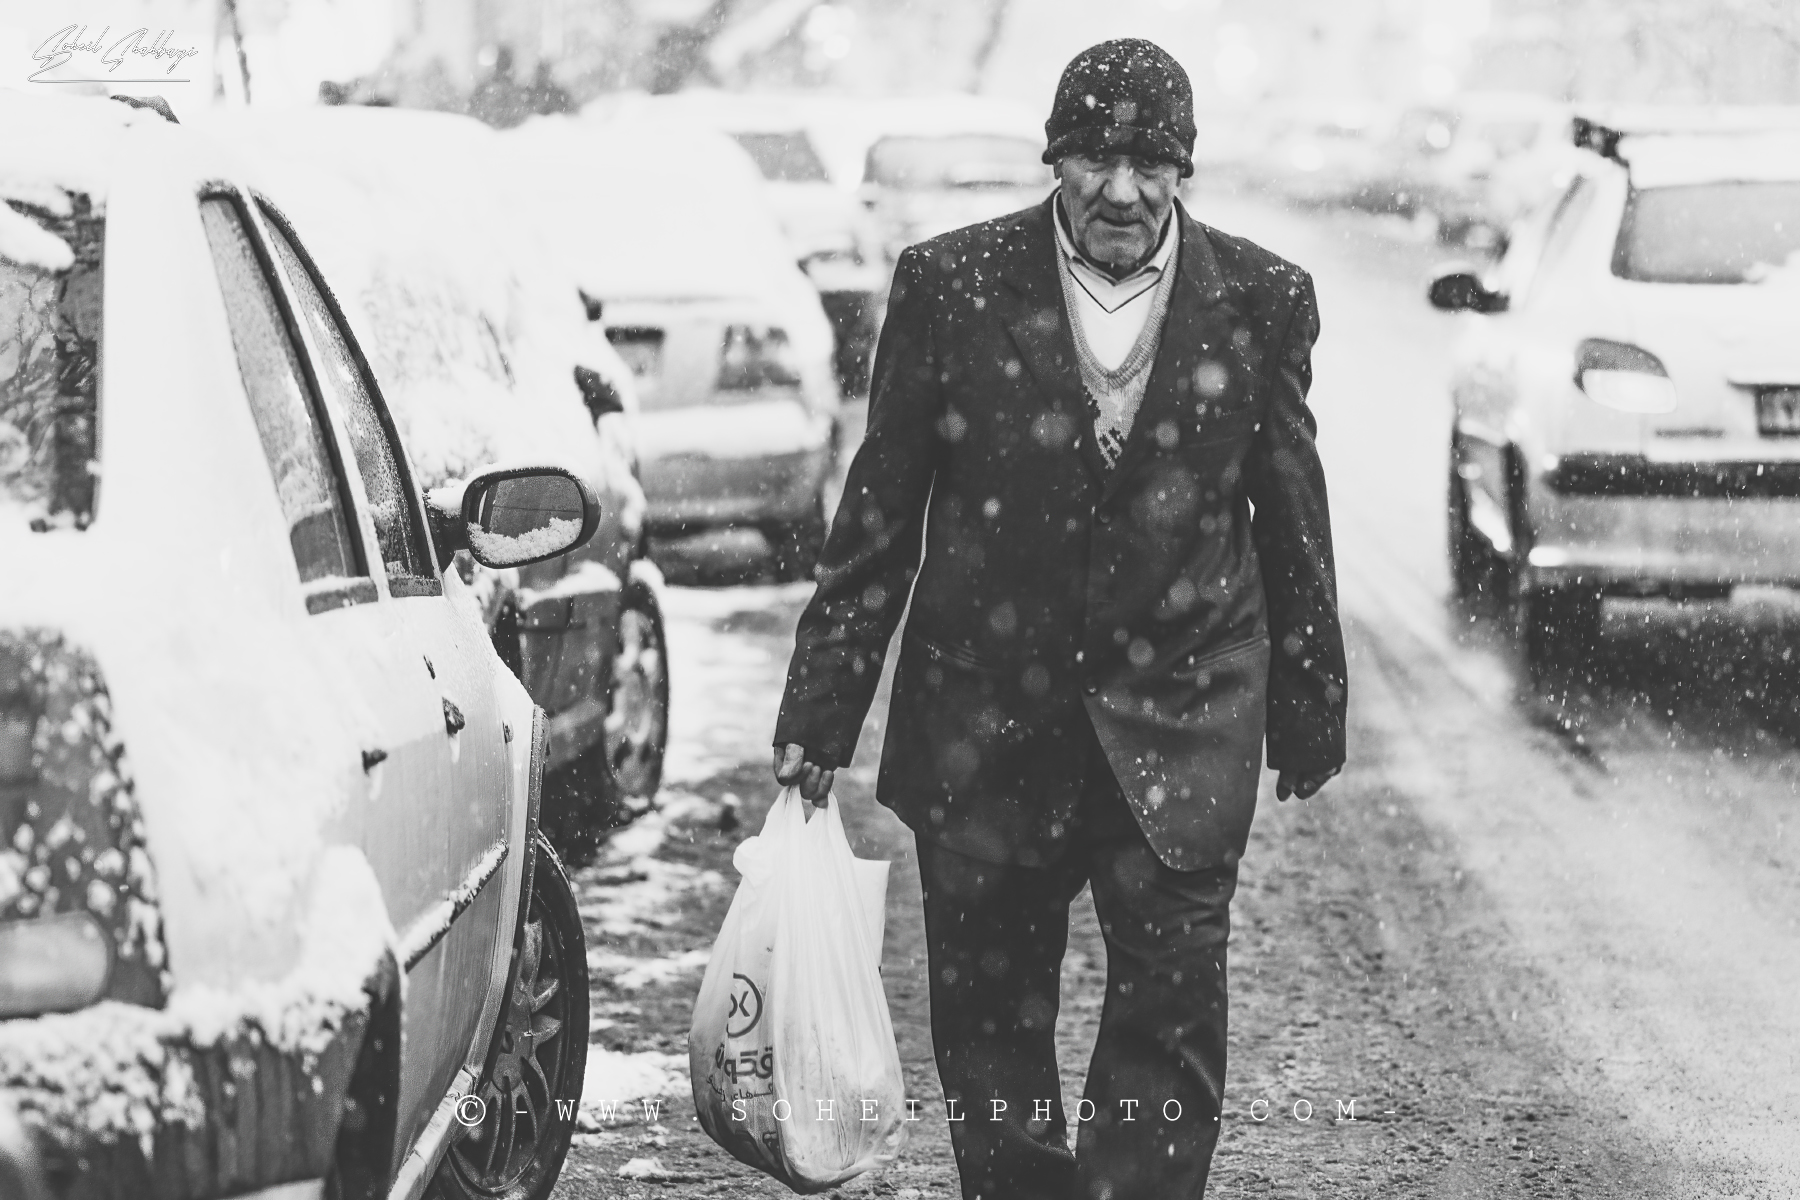 Giornata di neve a Teheran 3...